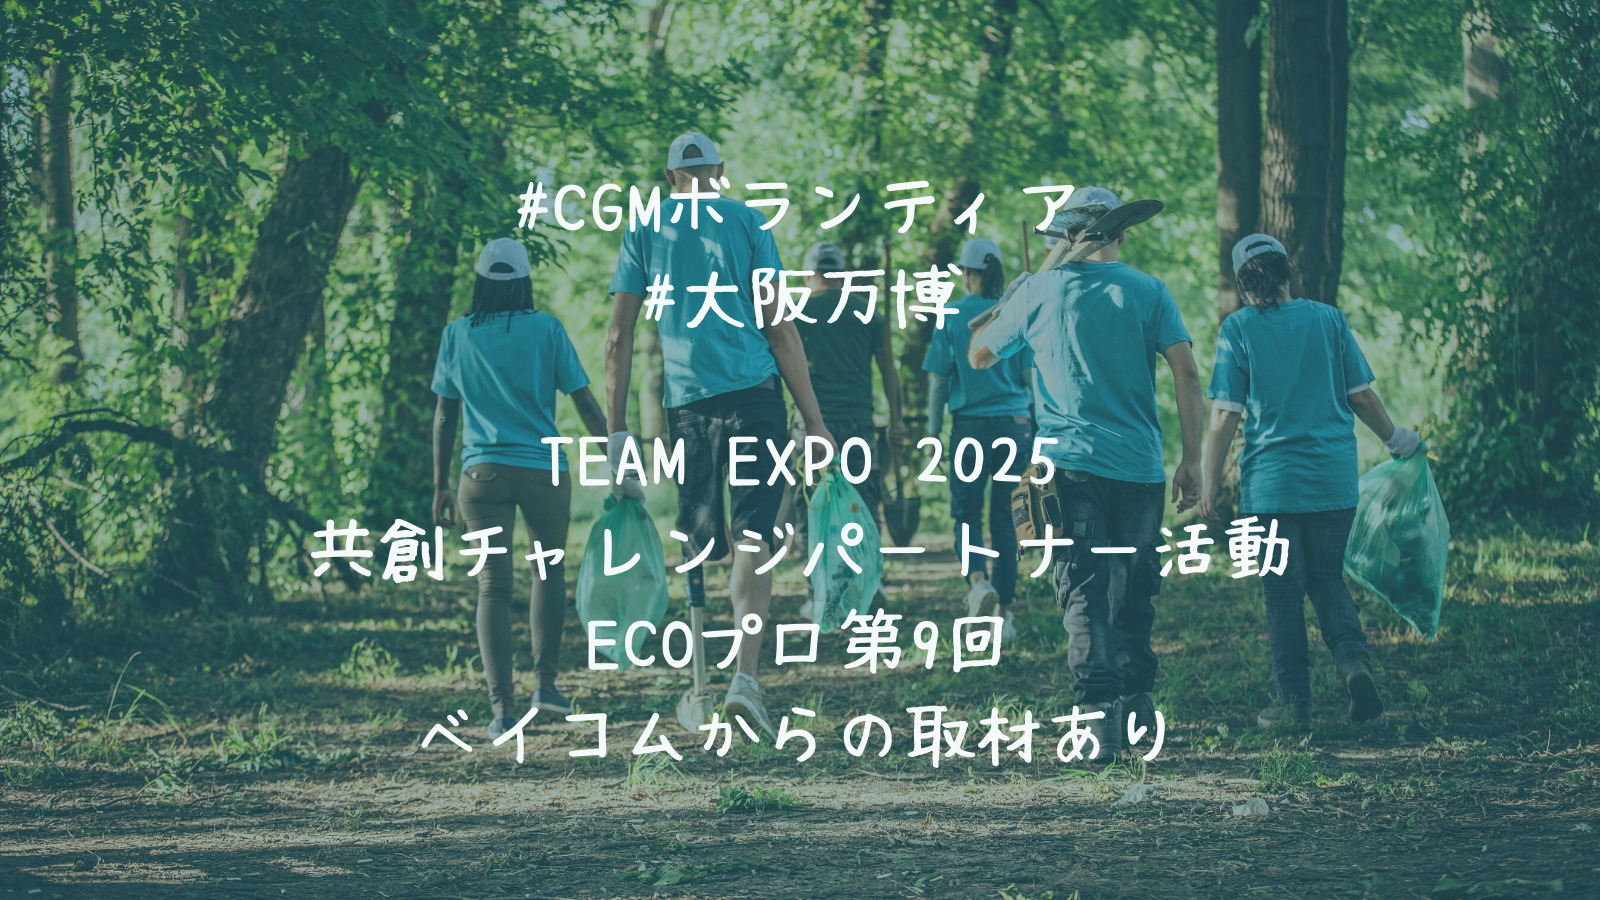 キリスト教福音宣教会　#CGMボランティア #大阪万博　TEAM EXPO 2025 共創チャレンジパートナー活動 ECOプロ第9回 ベイコムからの取材あり